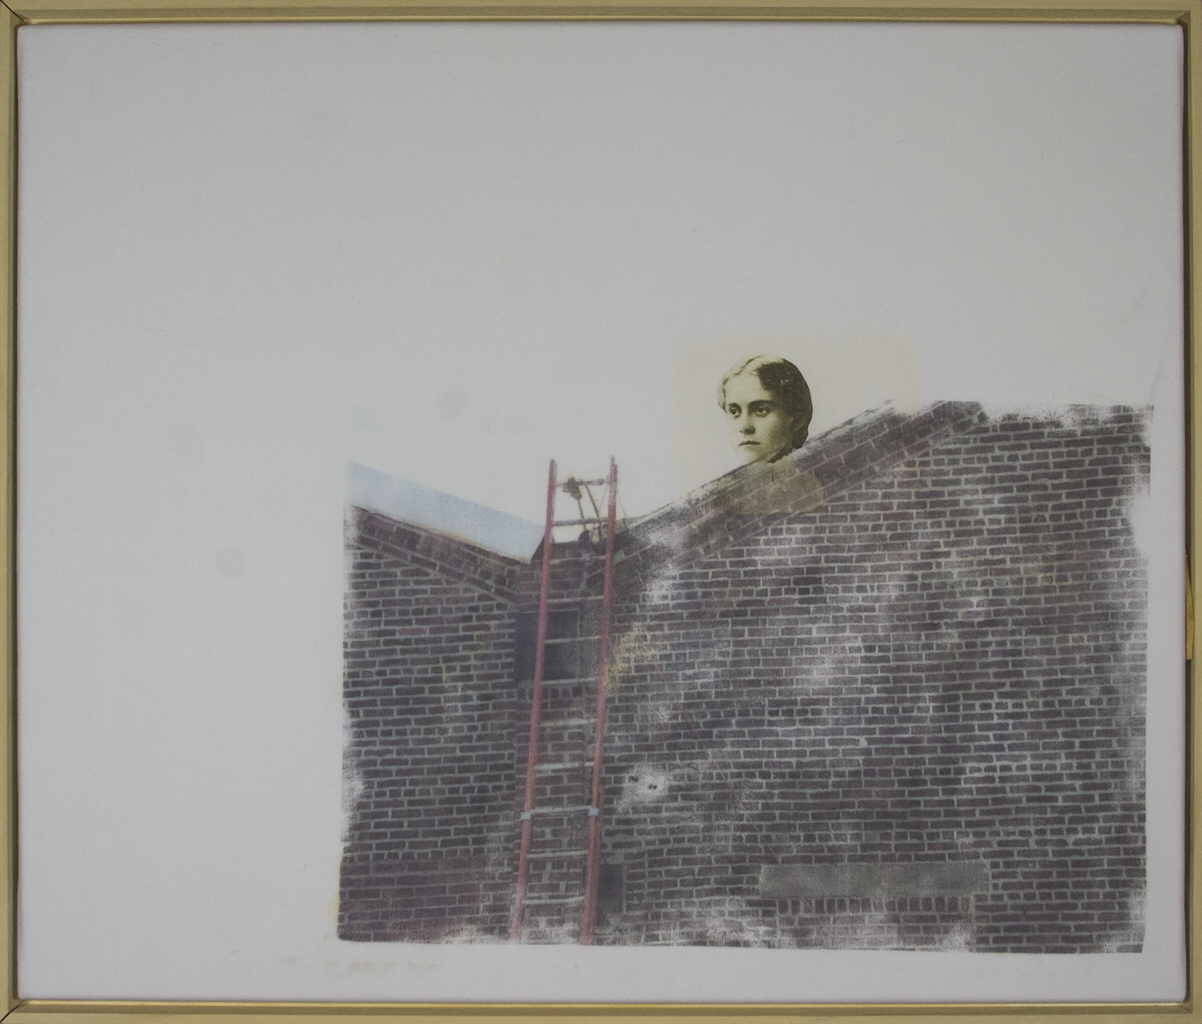 Zauner Christa 
"Escalator", 2004
Frottage / Canvas
50 x 60 cm